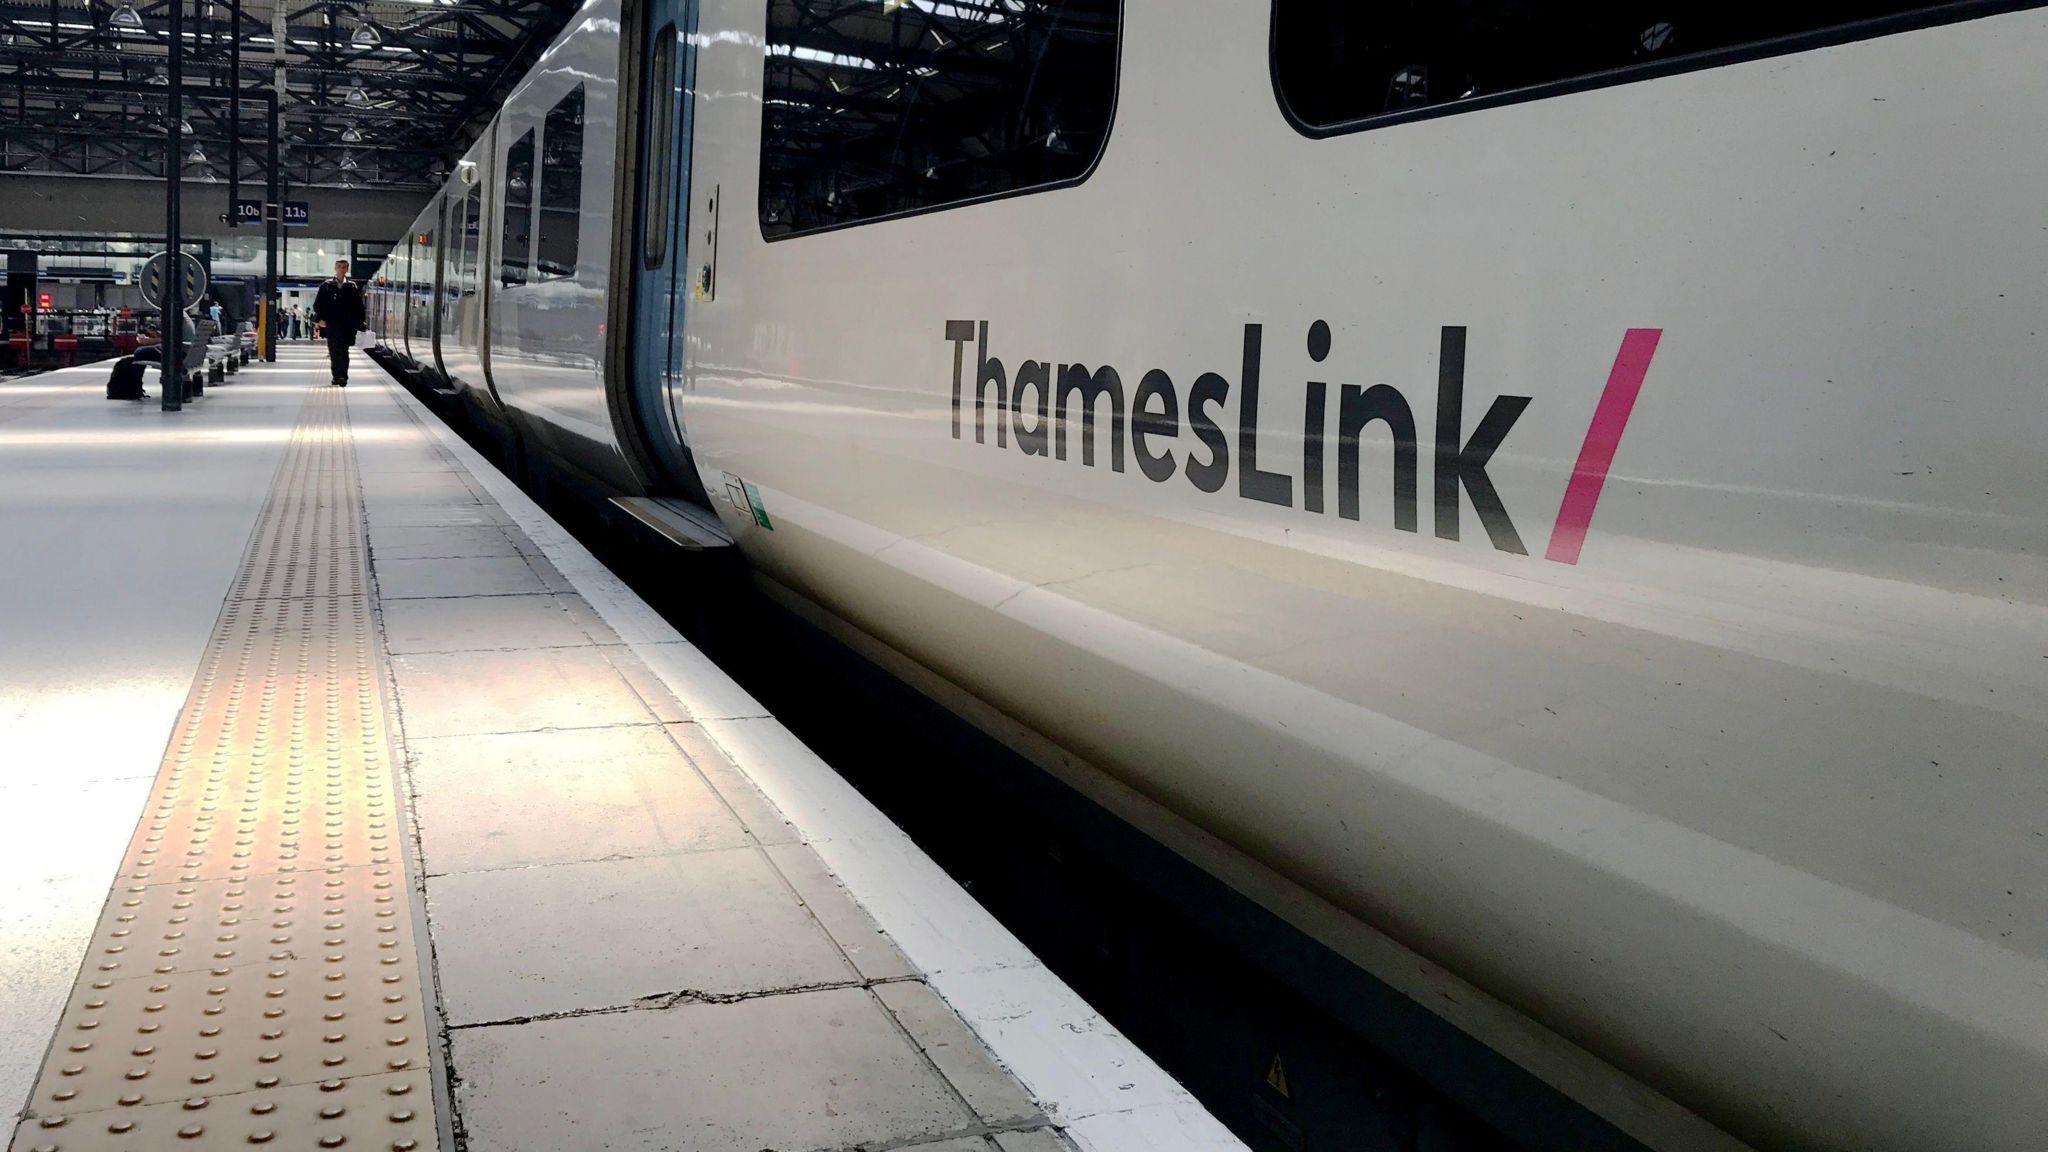 A Thameslink train at platform 11 